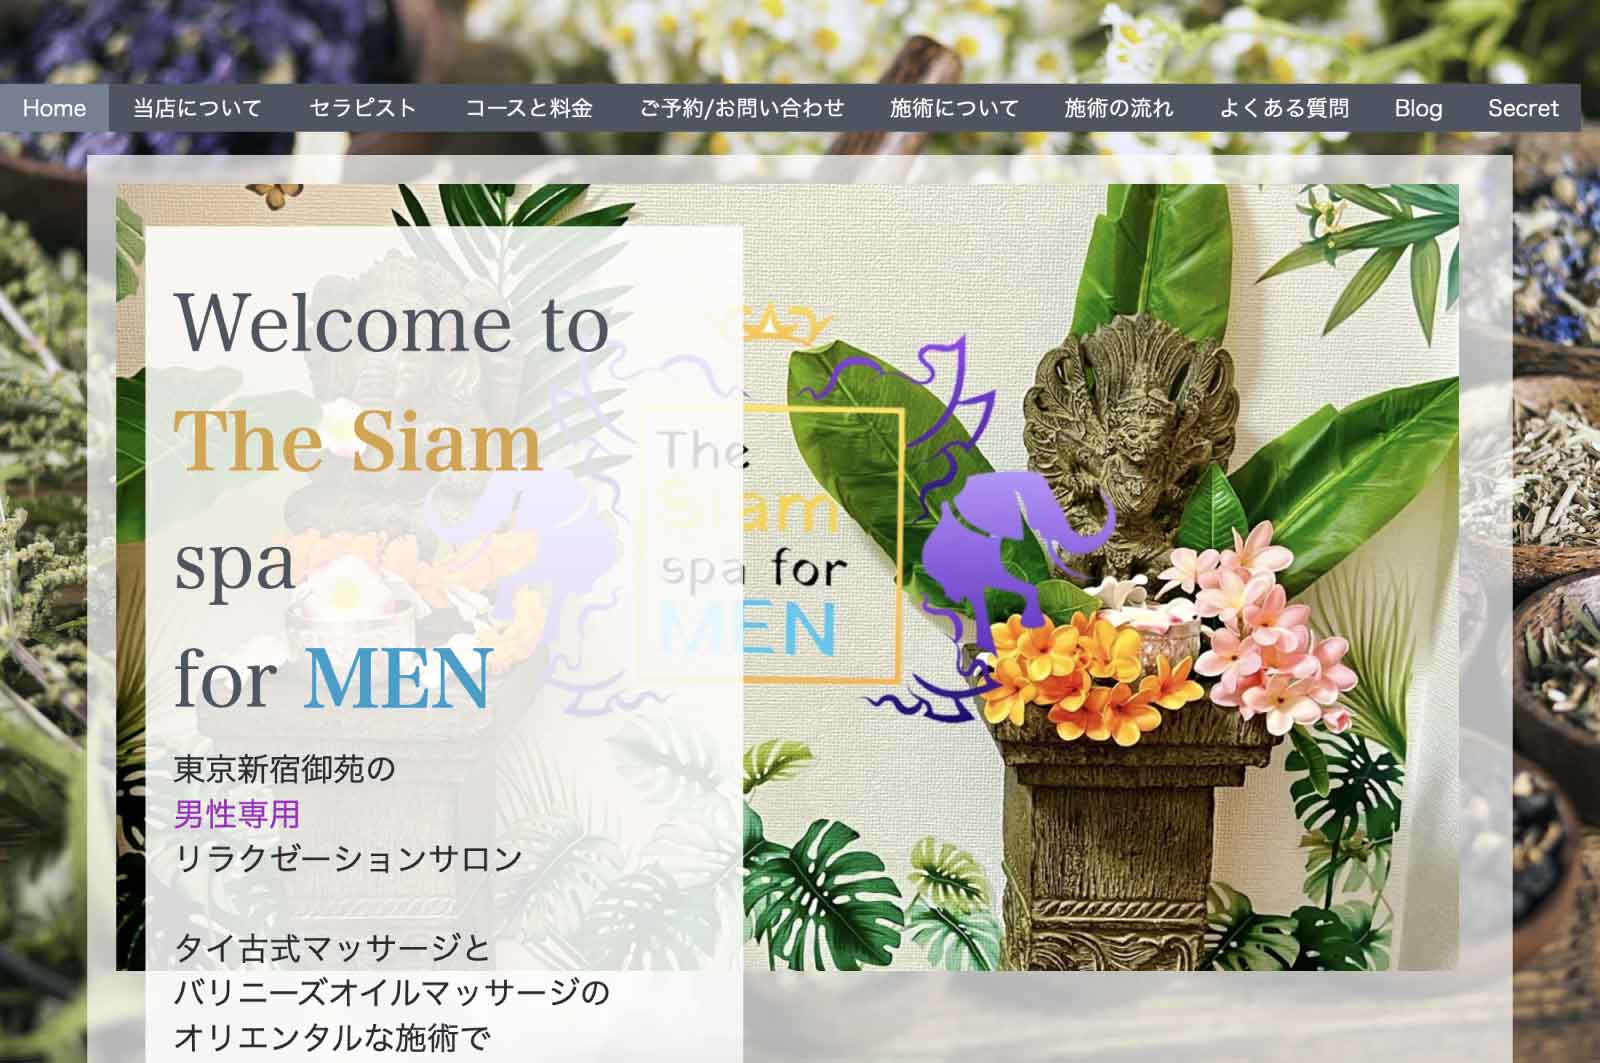 The Siam spa for MEN